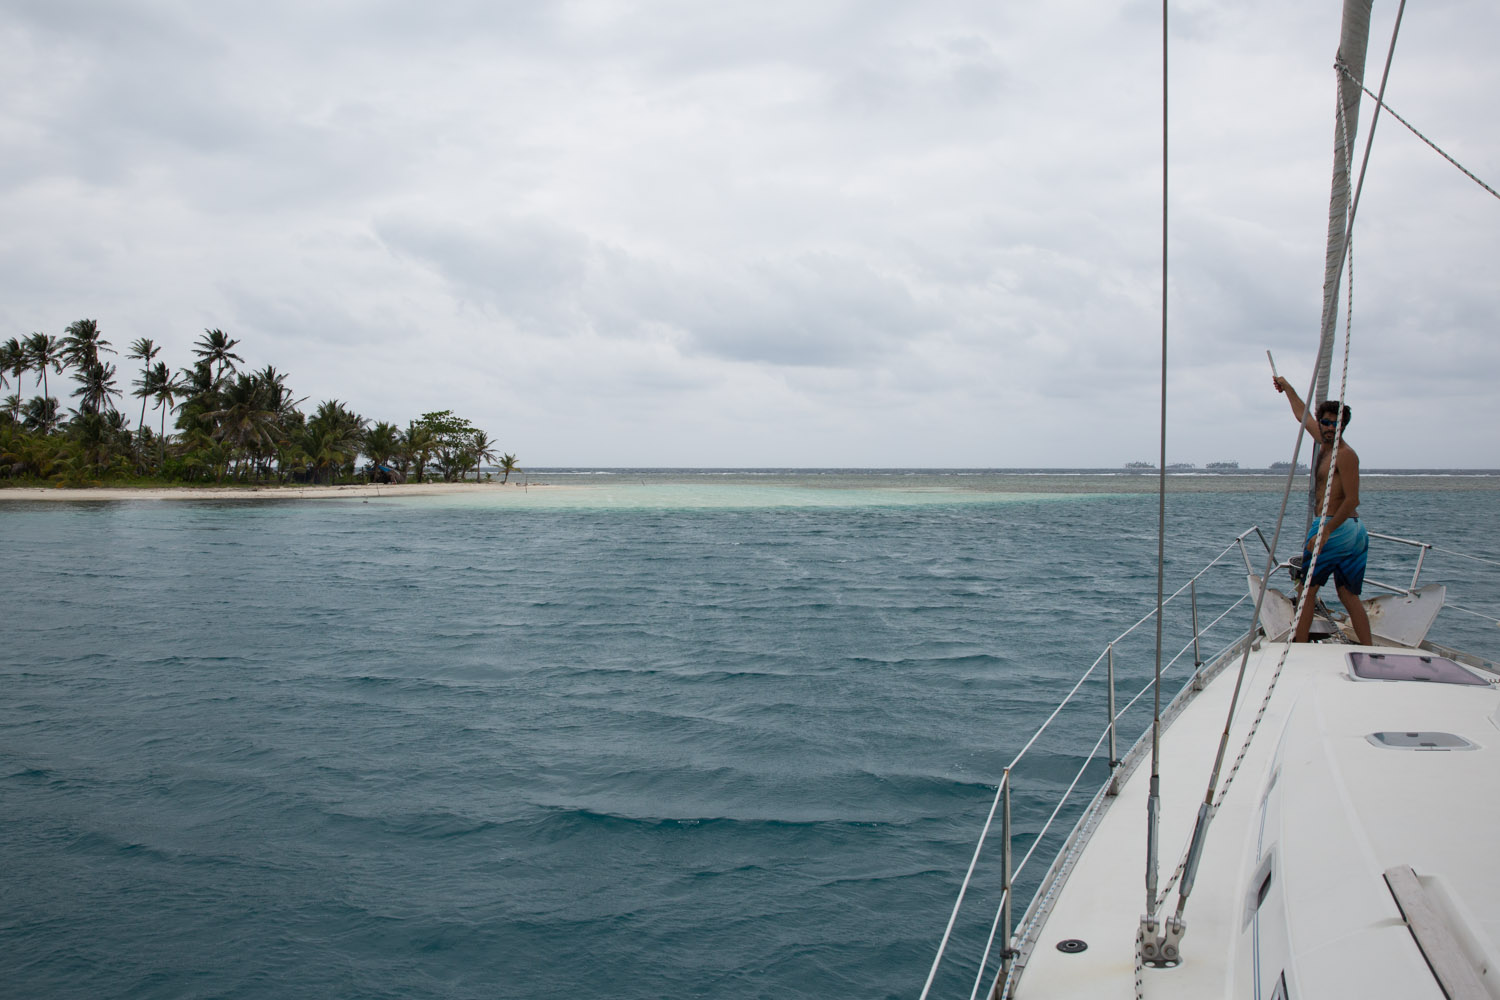 Anclando un velero cerca de una isla en el archipiélago de San Blas o Guna Yala, Panamá